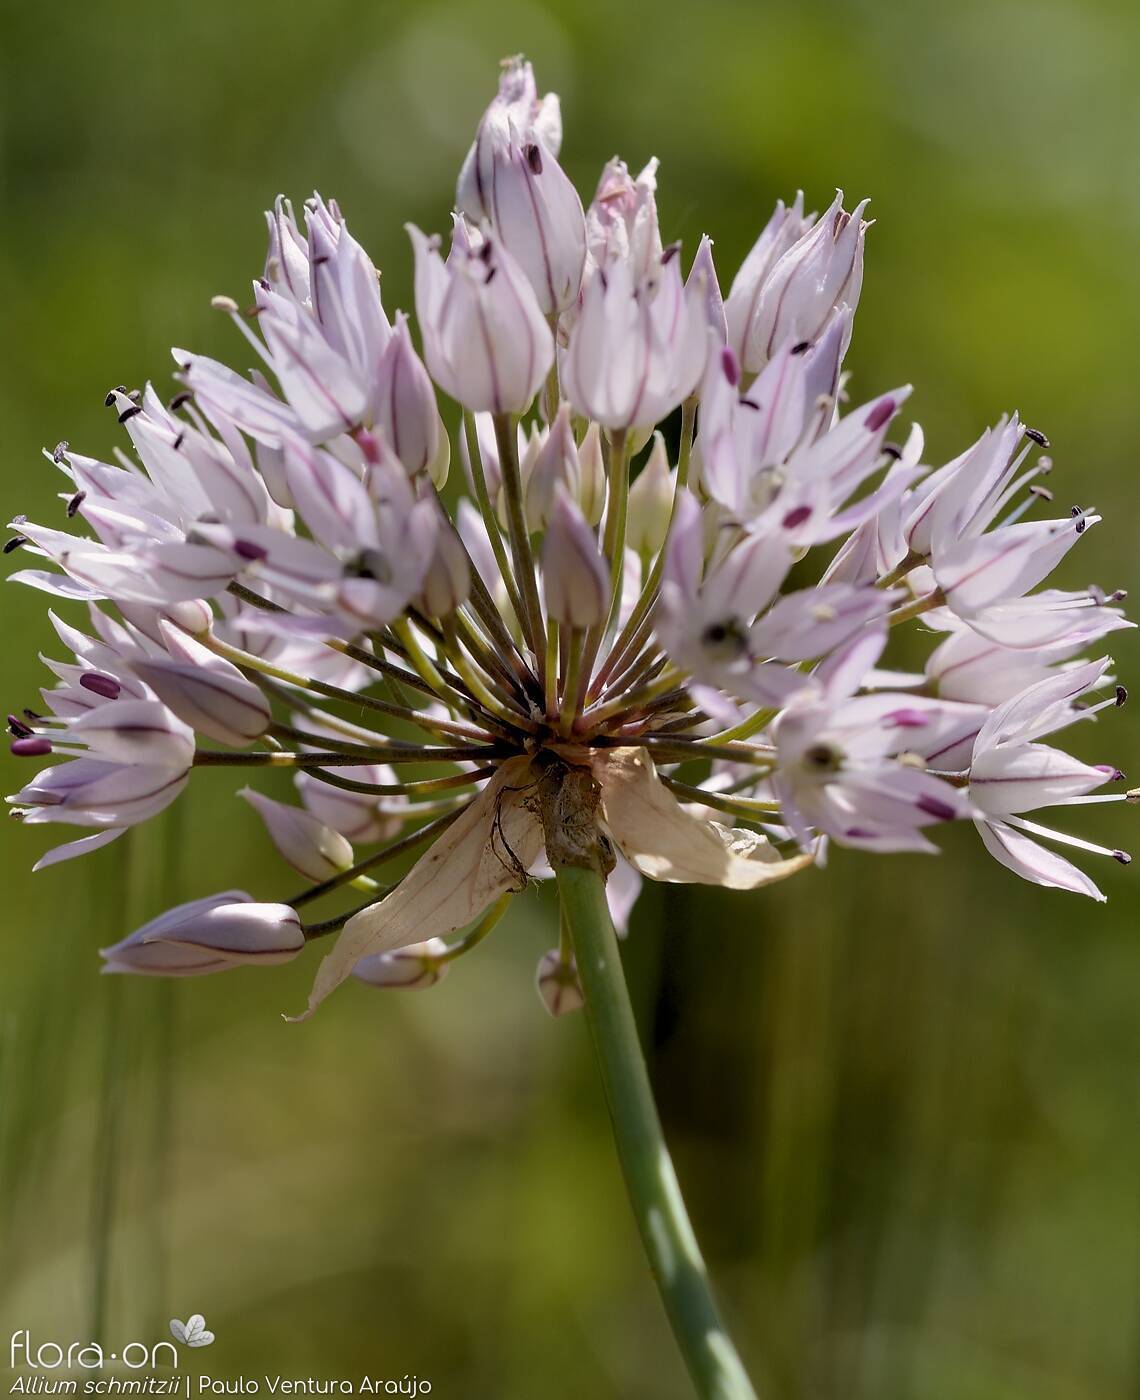 Allium schmitzii - Flor (geral) | Paulo Ventura Araújo; CC BY-NC 4.0